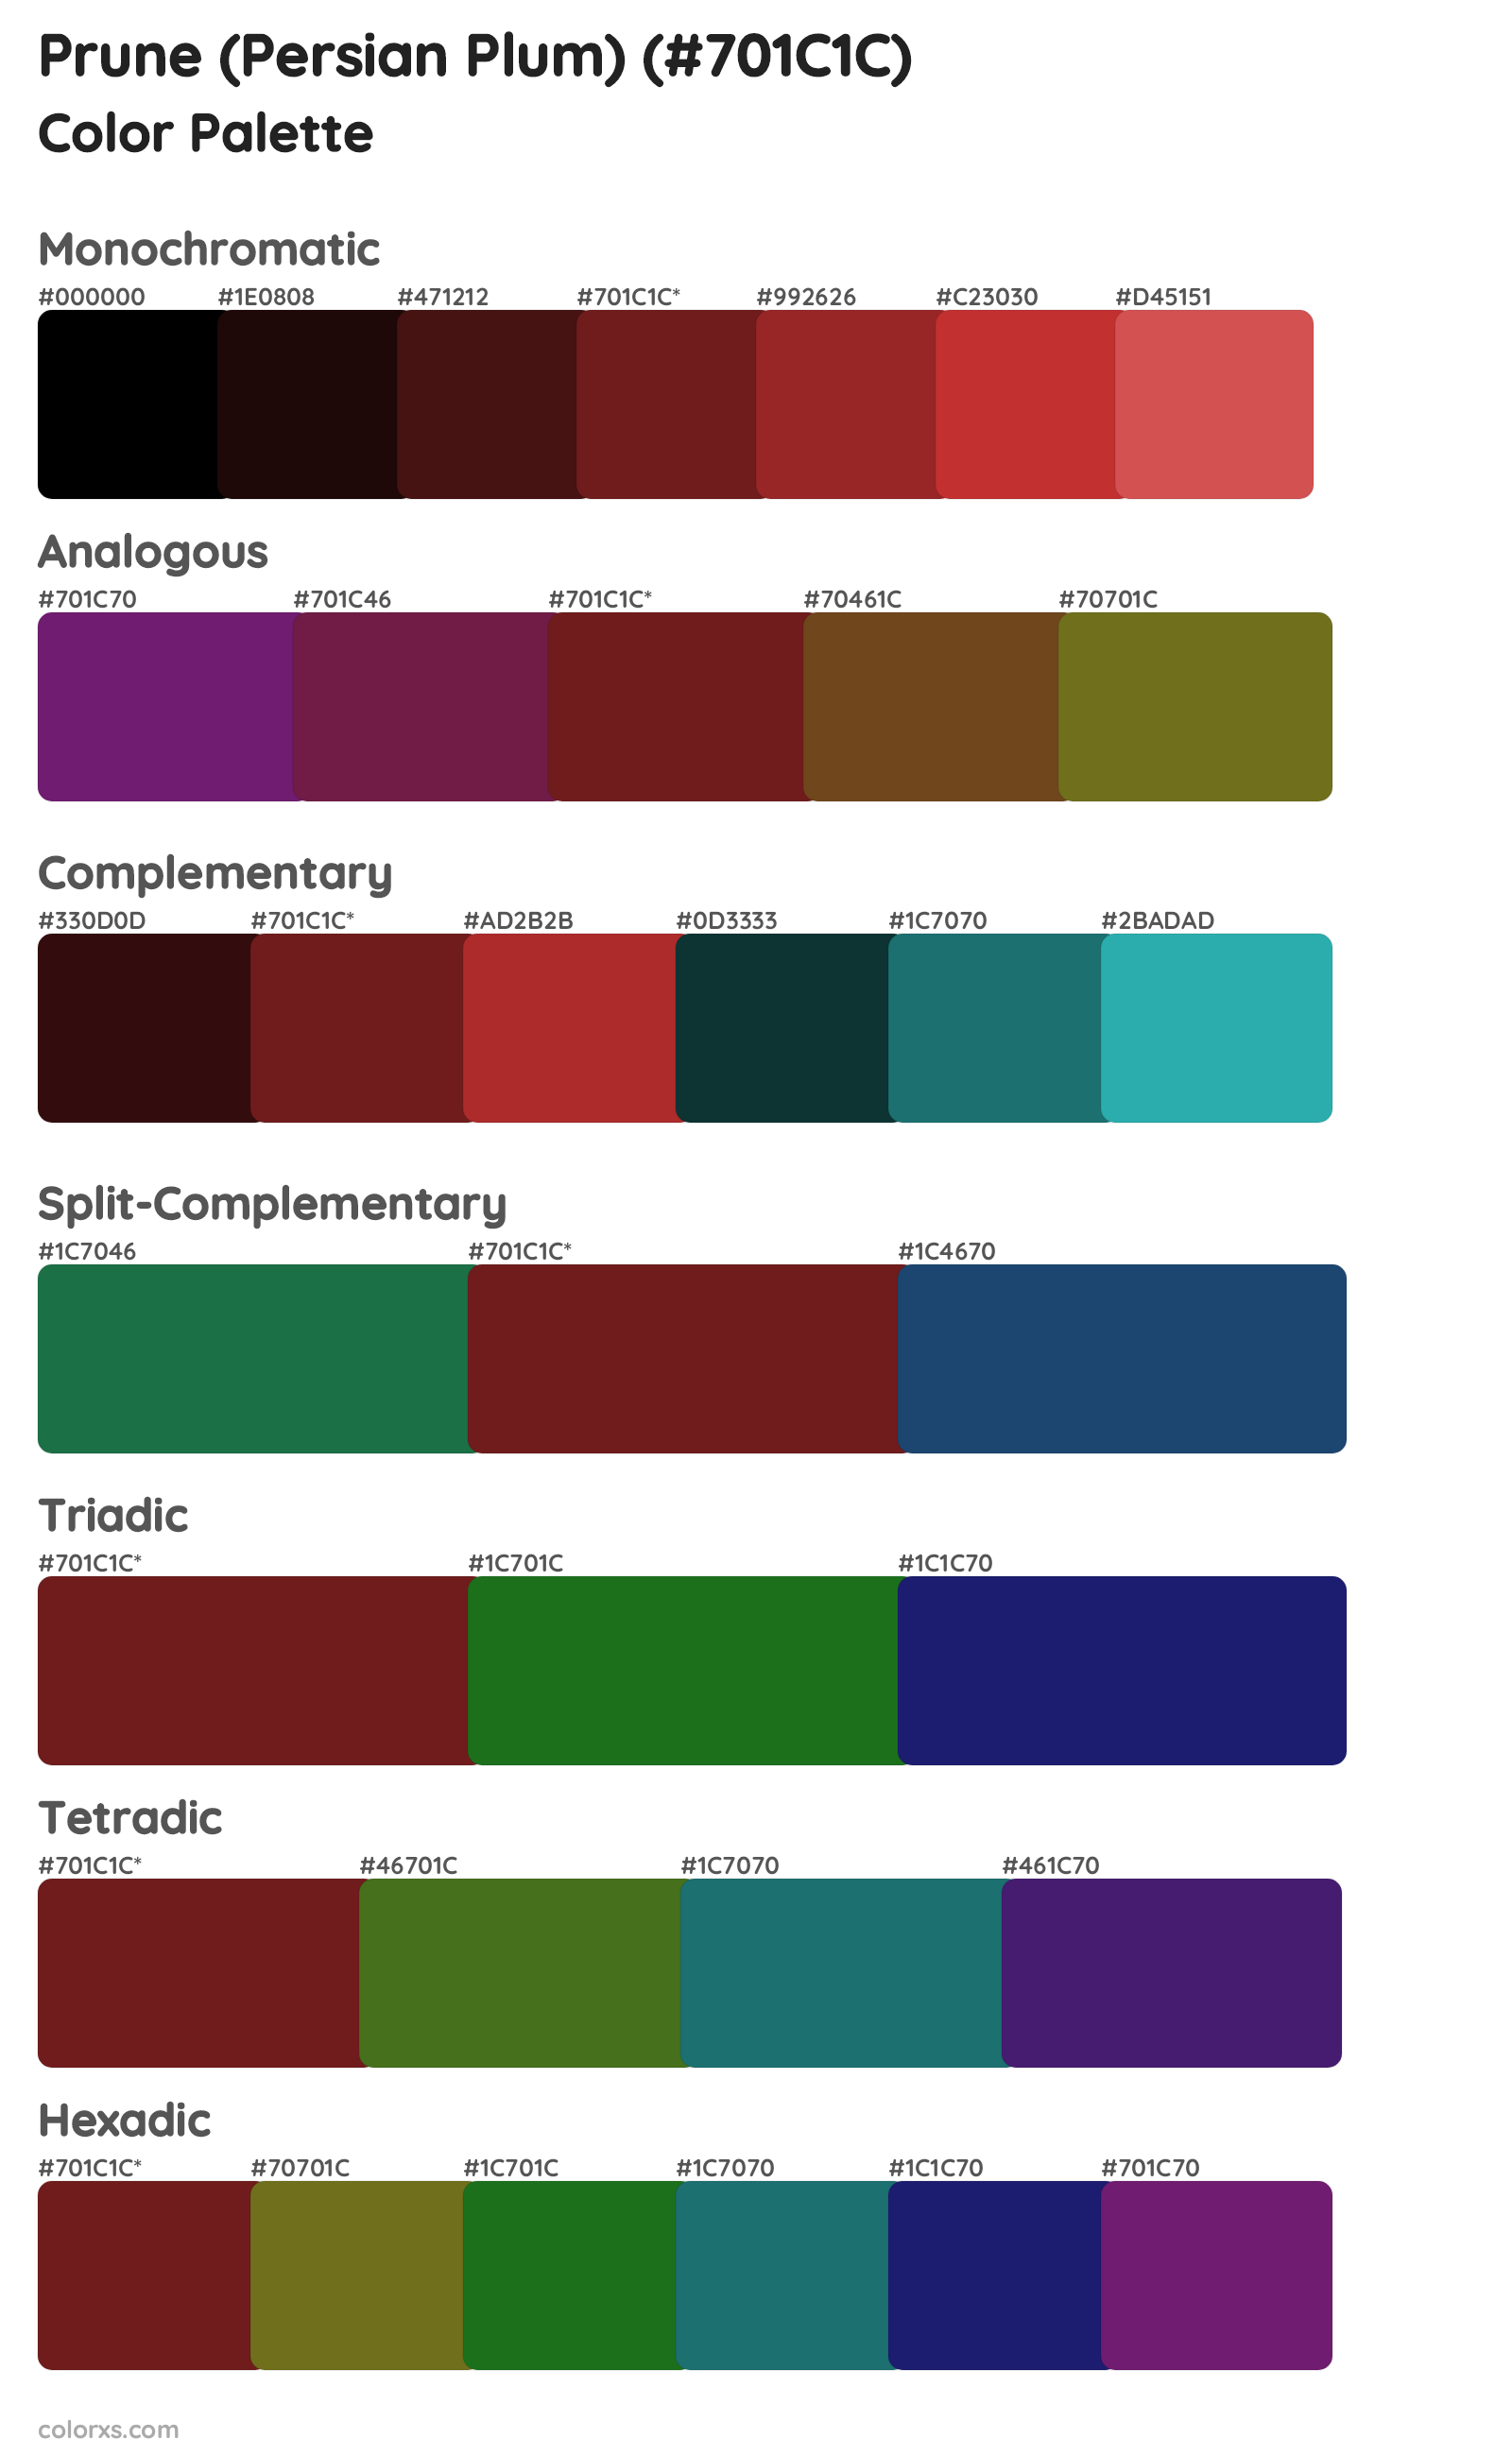 Prune (Persian Plum) Color Scheme Palettes